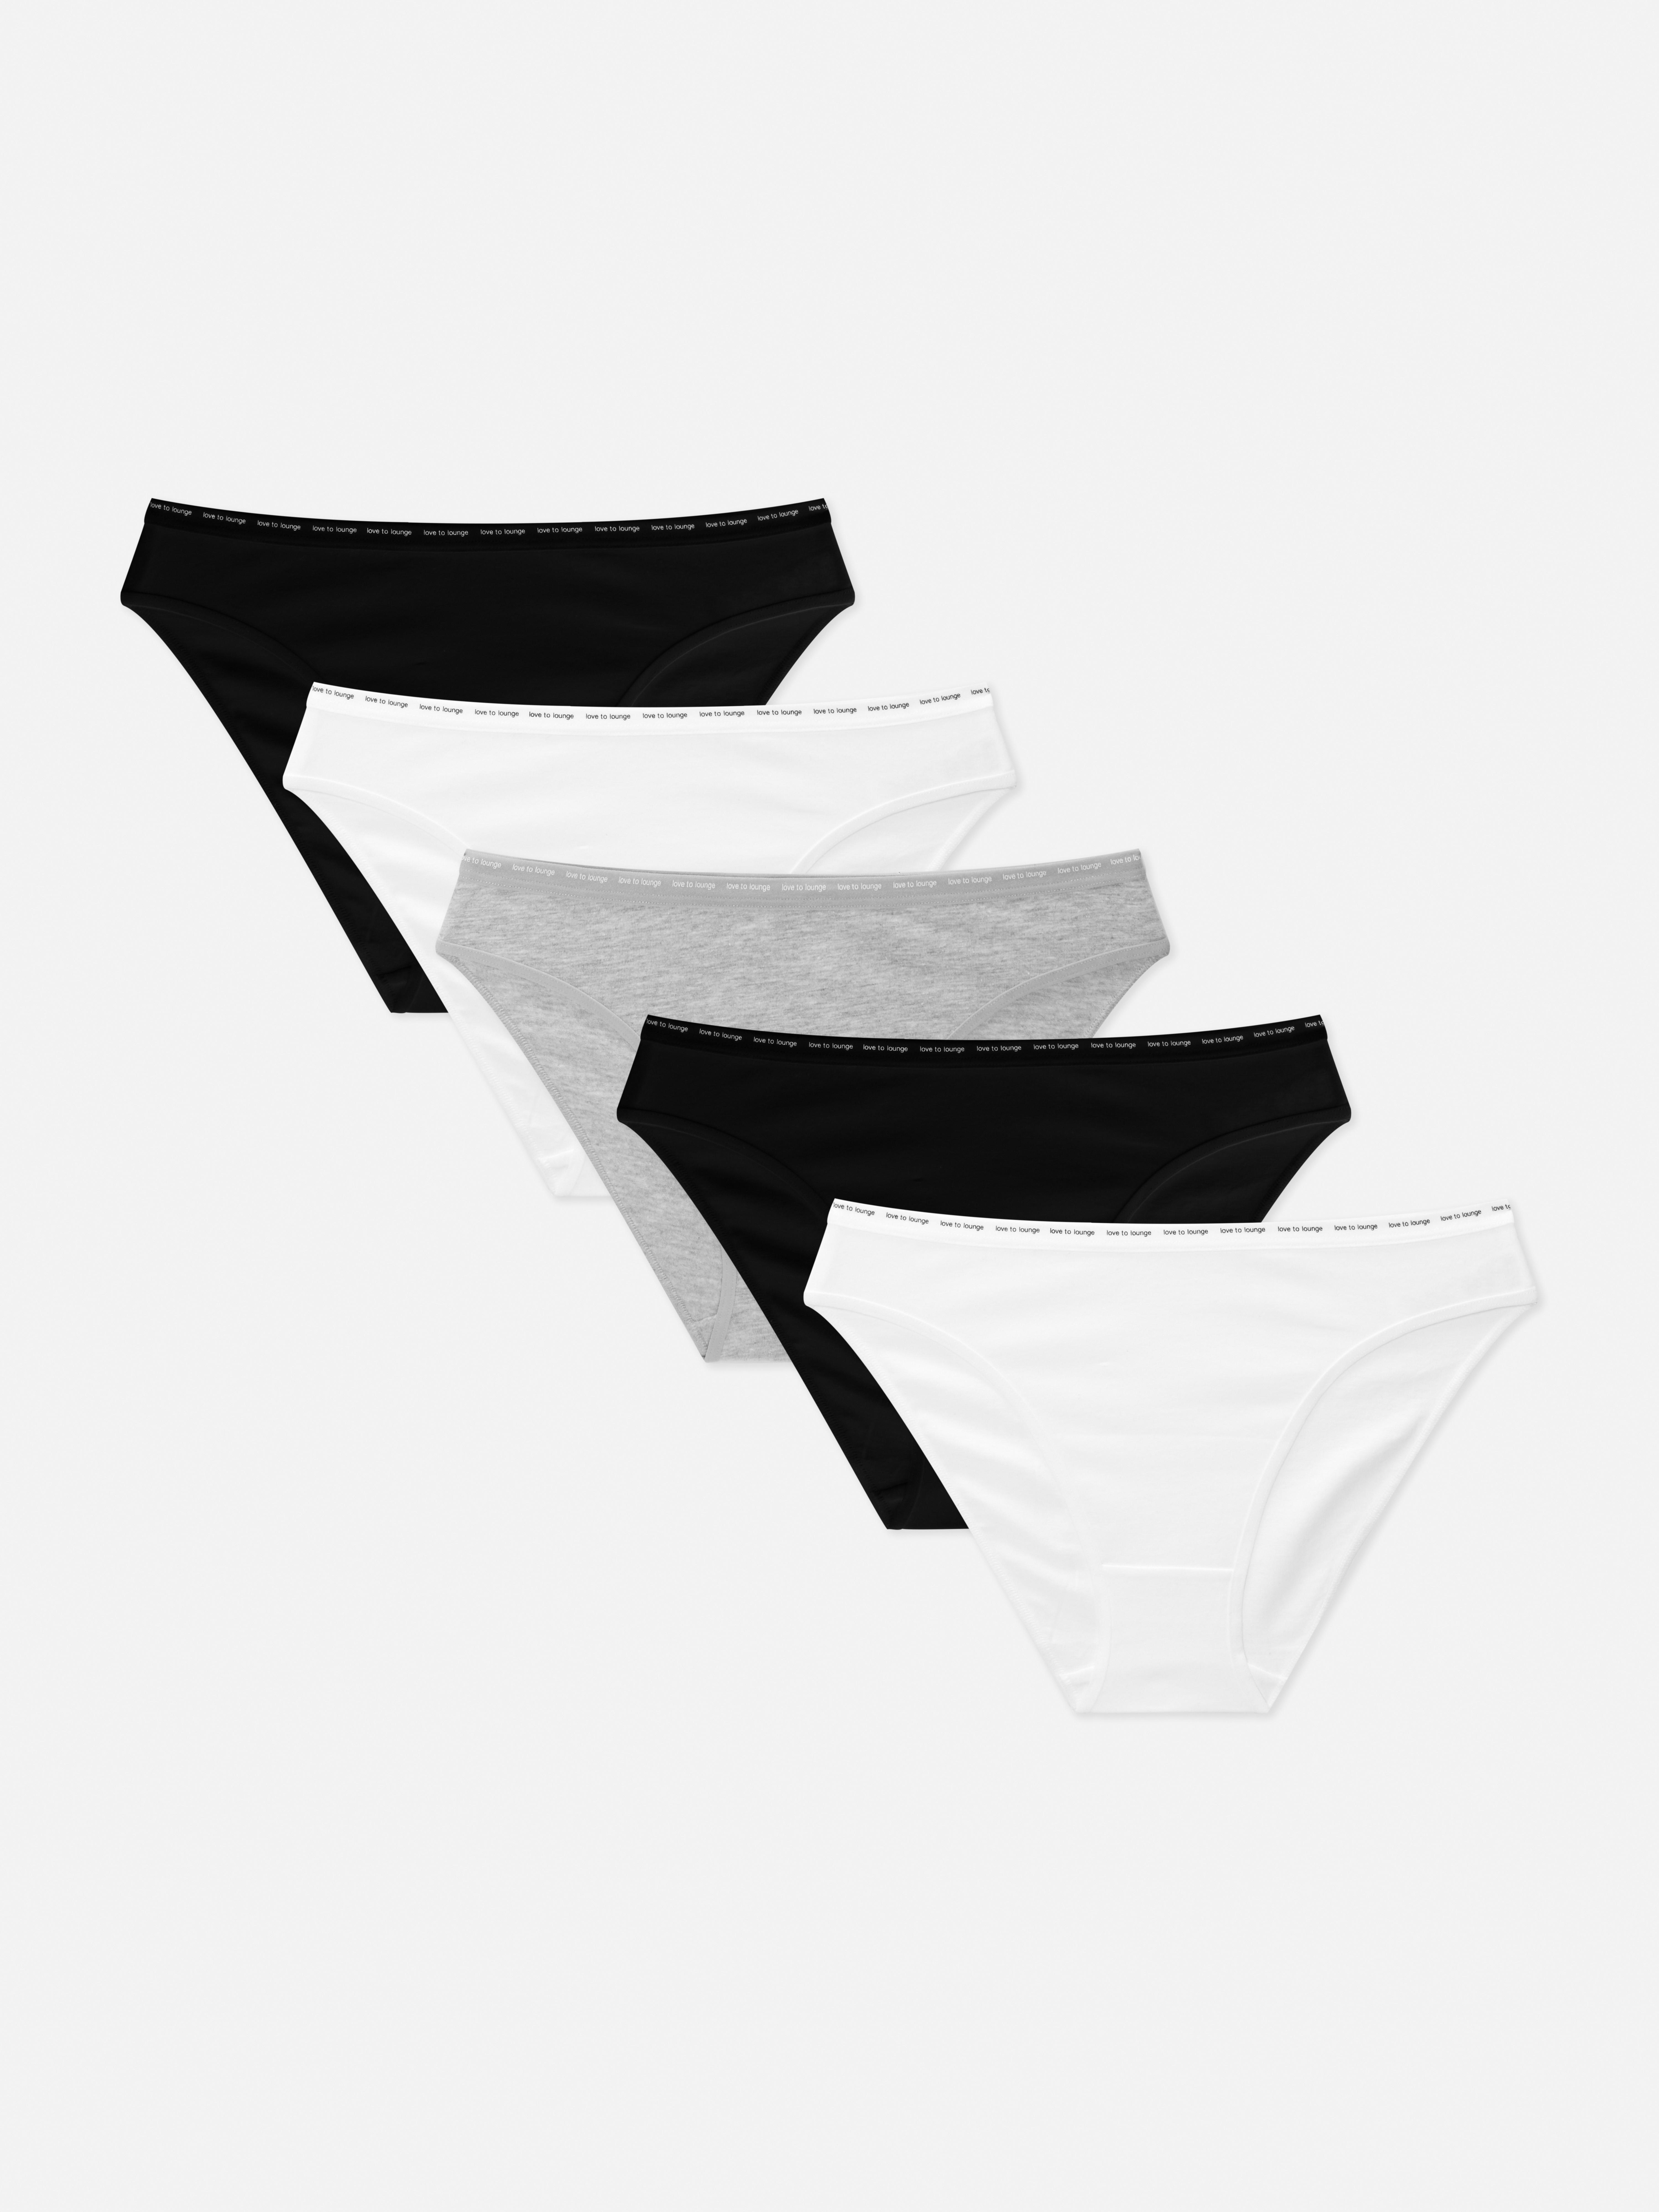 Primark 2017-18FW Underwear